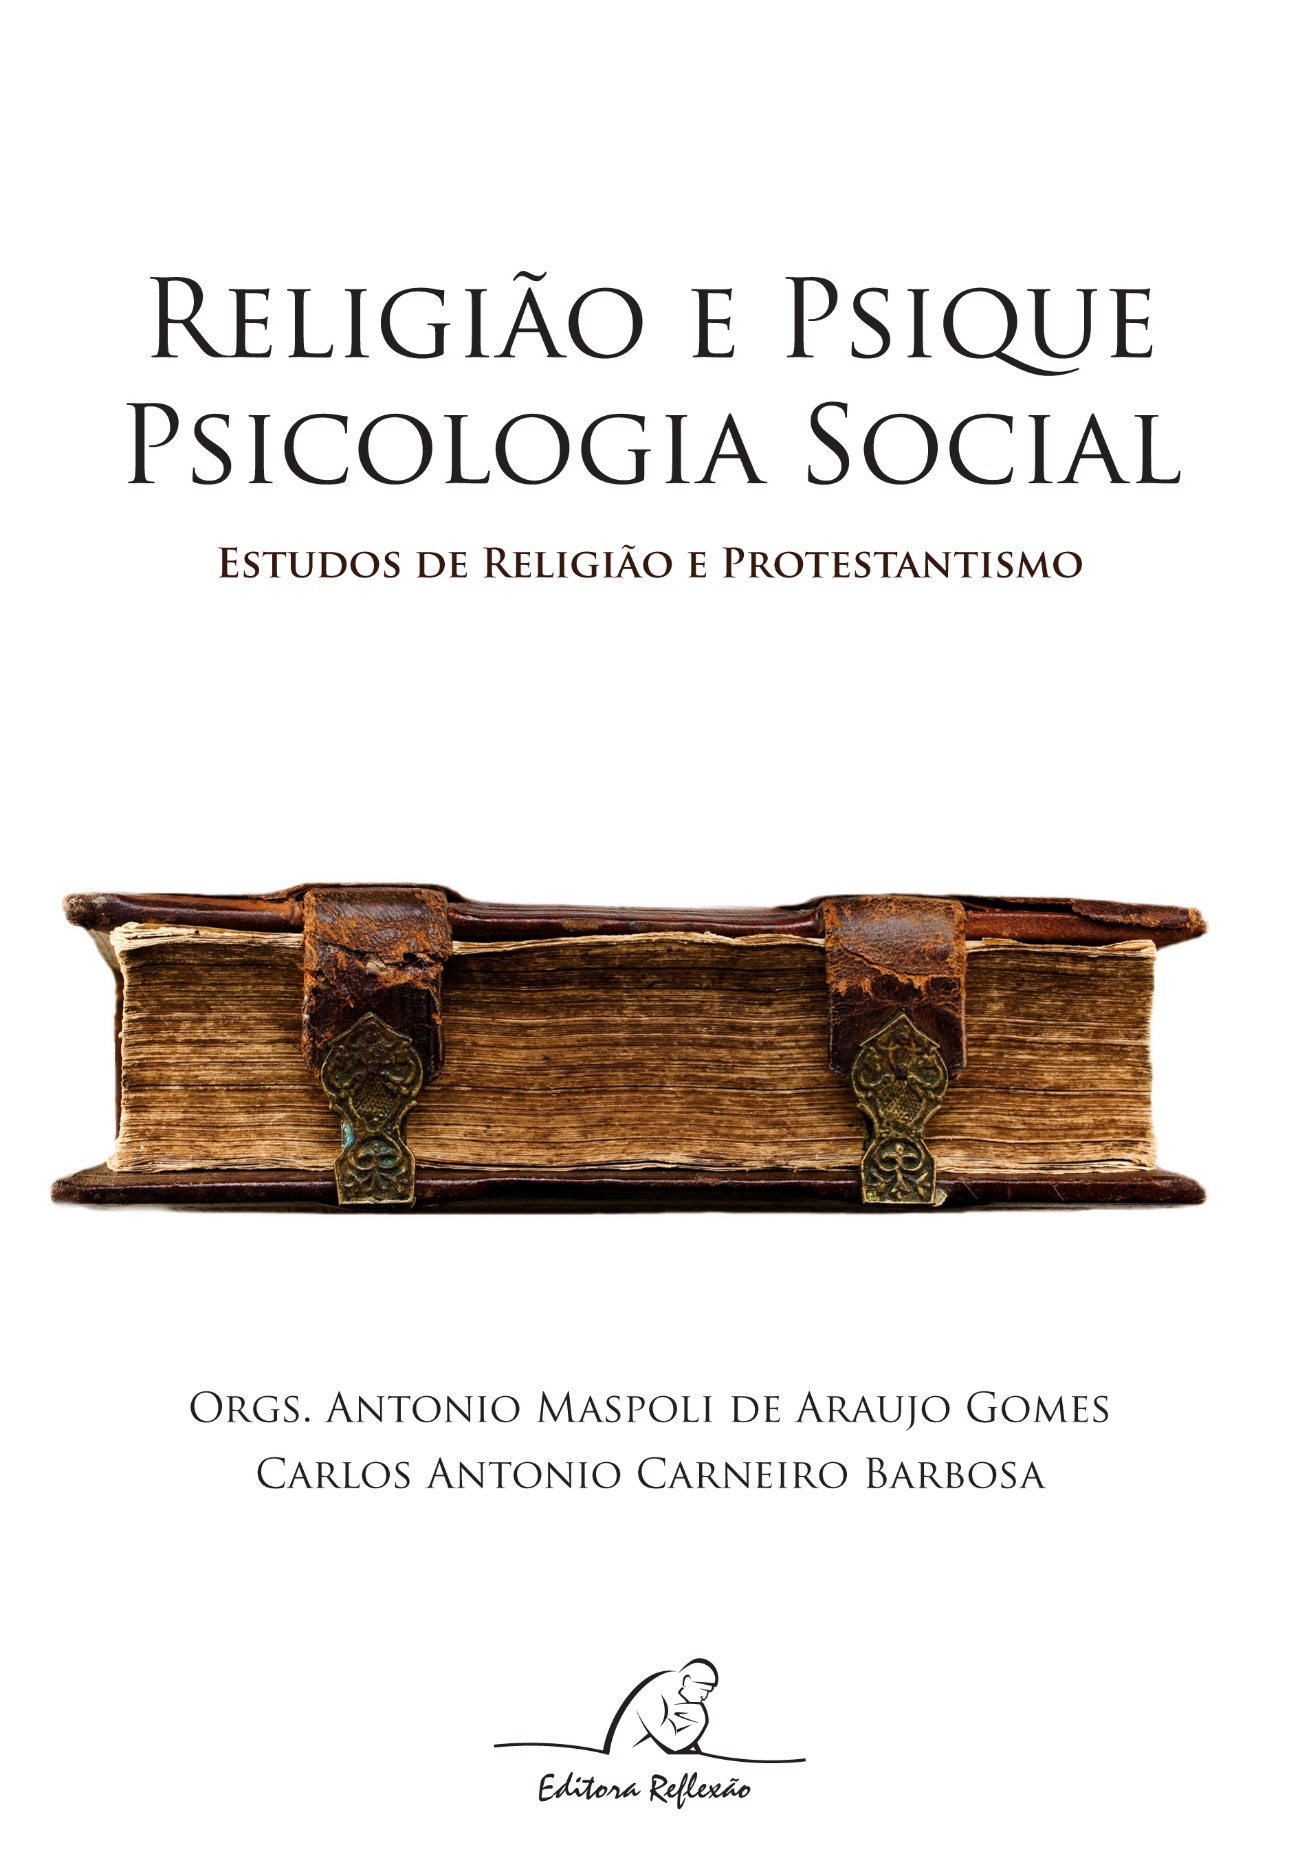 Psicologia Social da Religião: História e Abordagens Teóricas